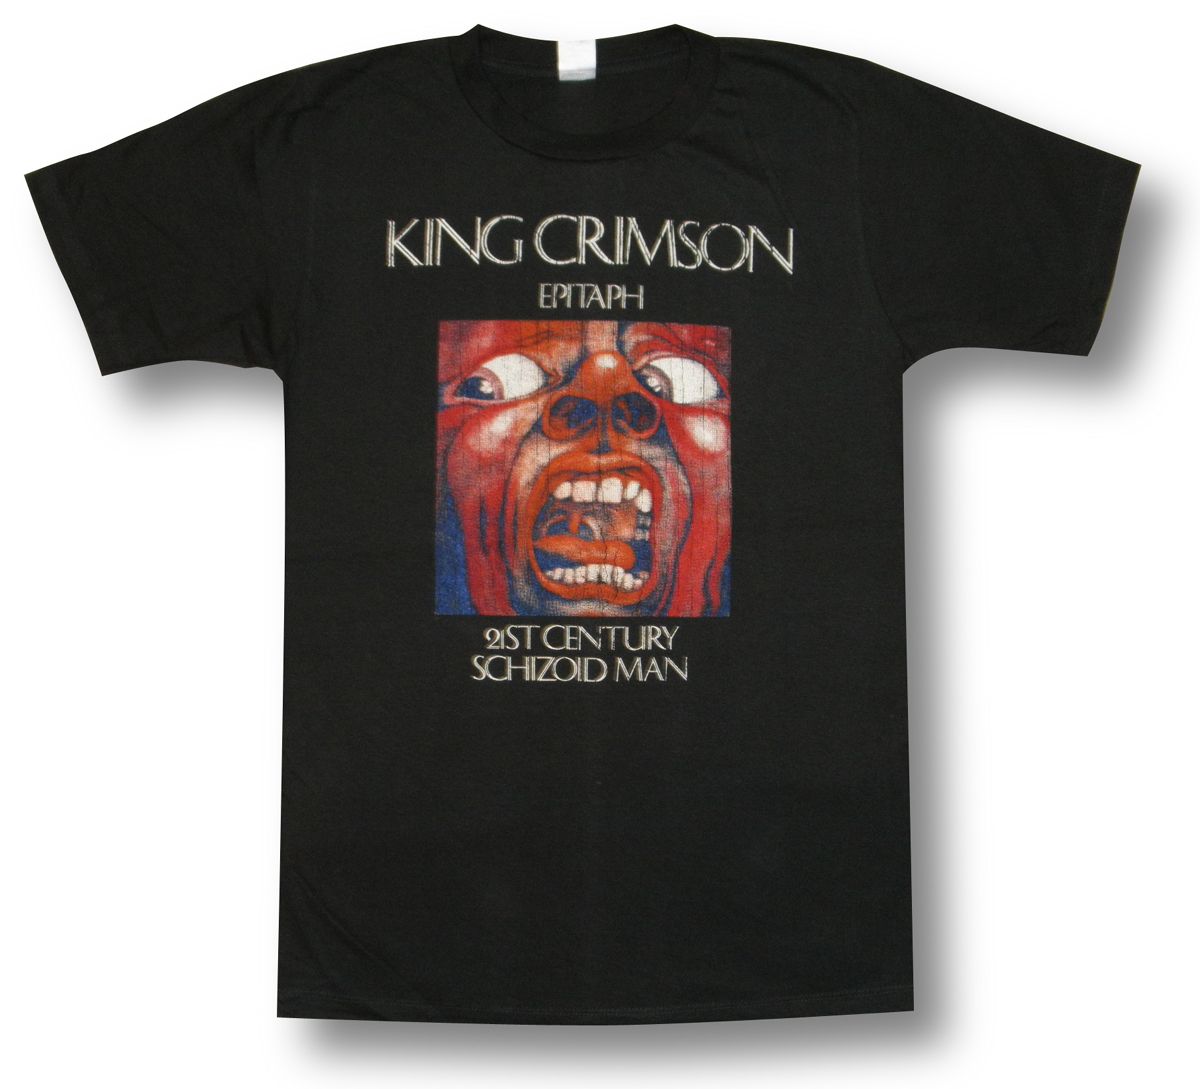 【土日も発送】 KING CRIMSON キング クリムゾン EPITAPH 21ST CENTURY SCHIZOID MAN ロックTシャツ バンドTシャツ メンズ チャコール グレー bny